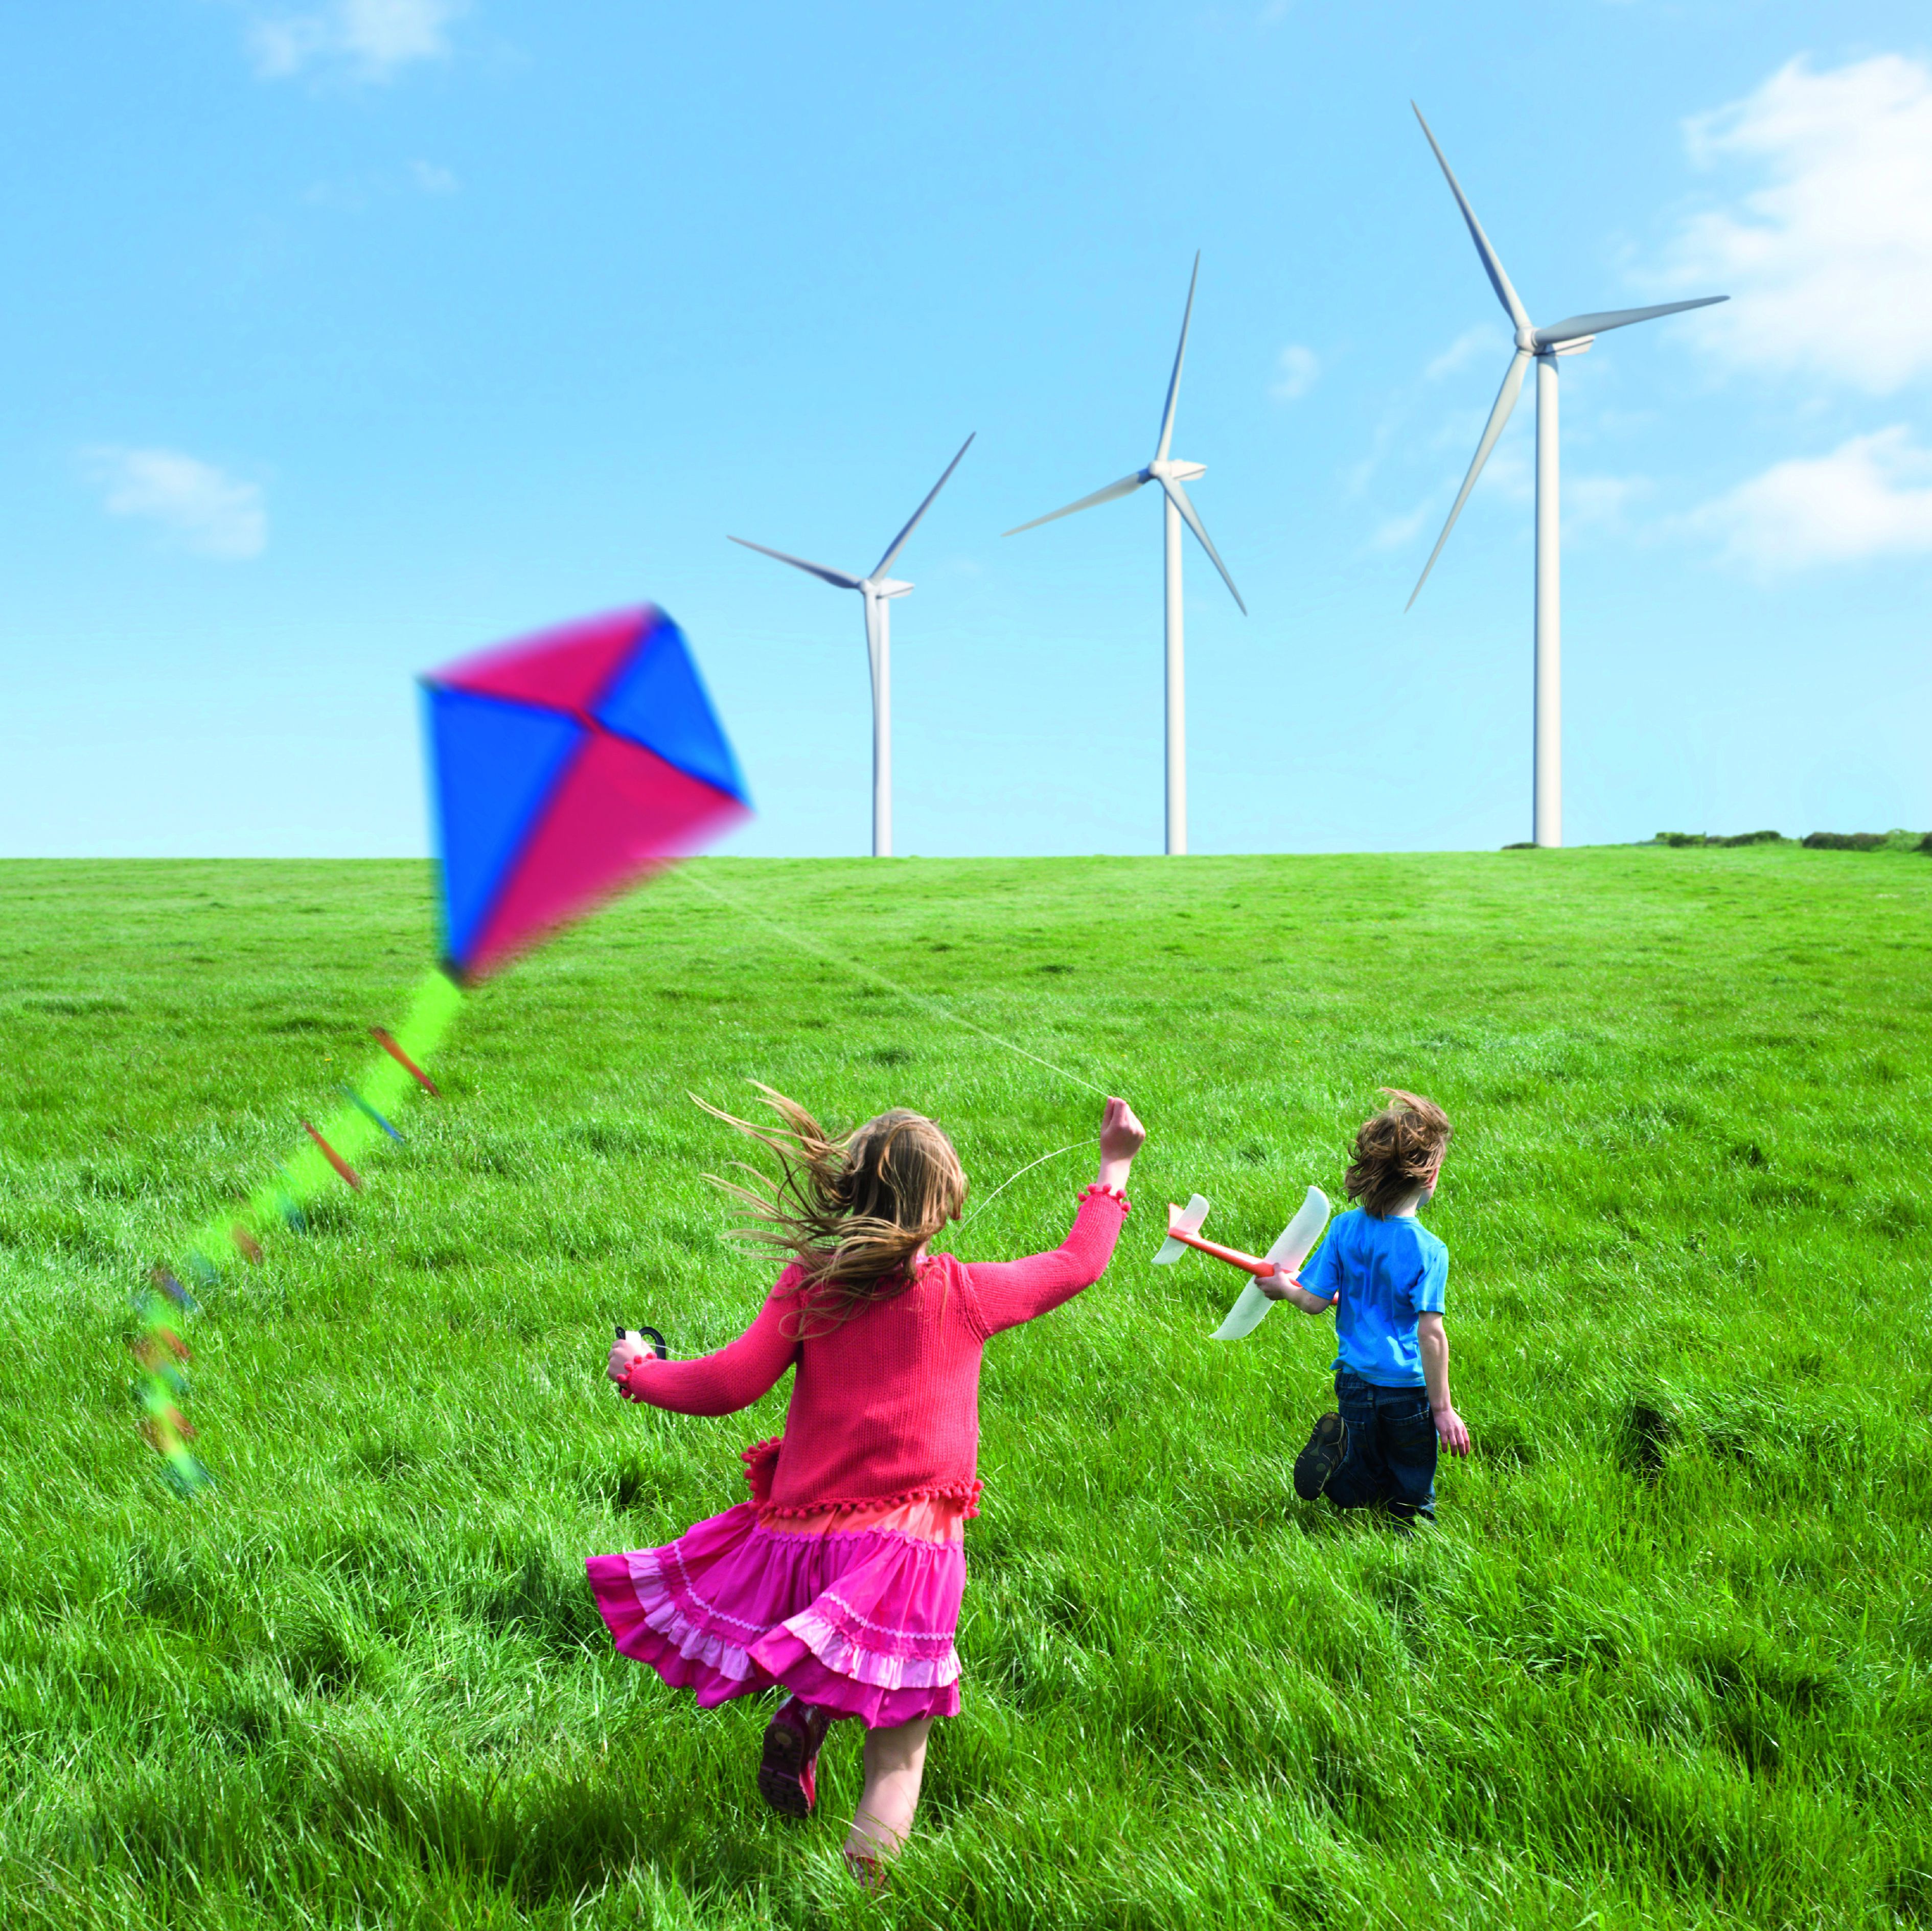 Kinder lassen Drachen steigen, grüne Wiese, Windräder im Hintergrund